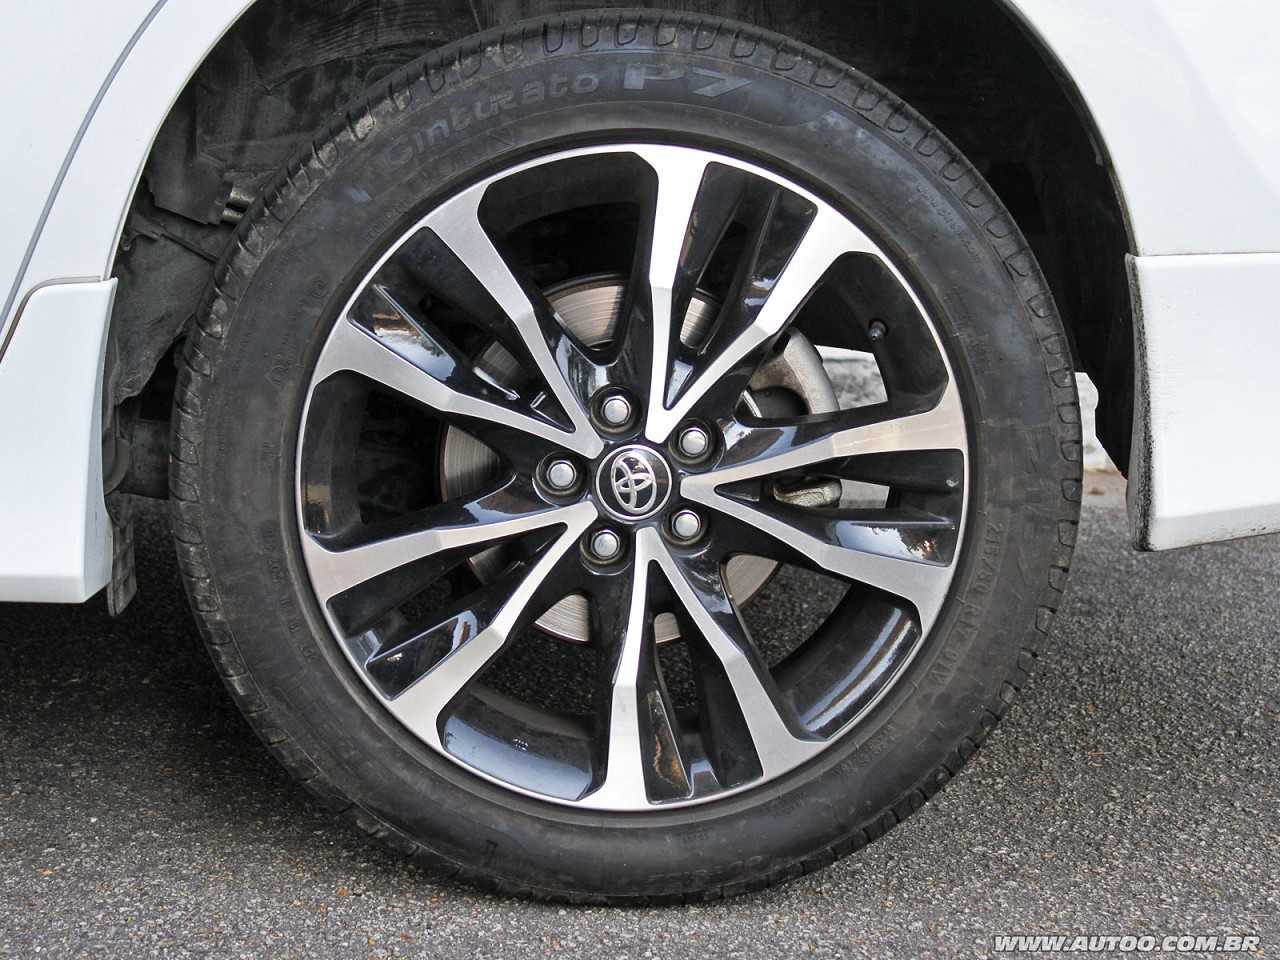 Toyota Corolla 2019 - rodas